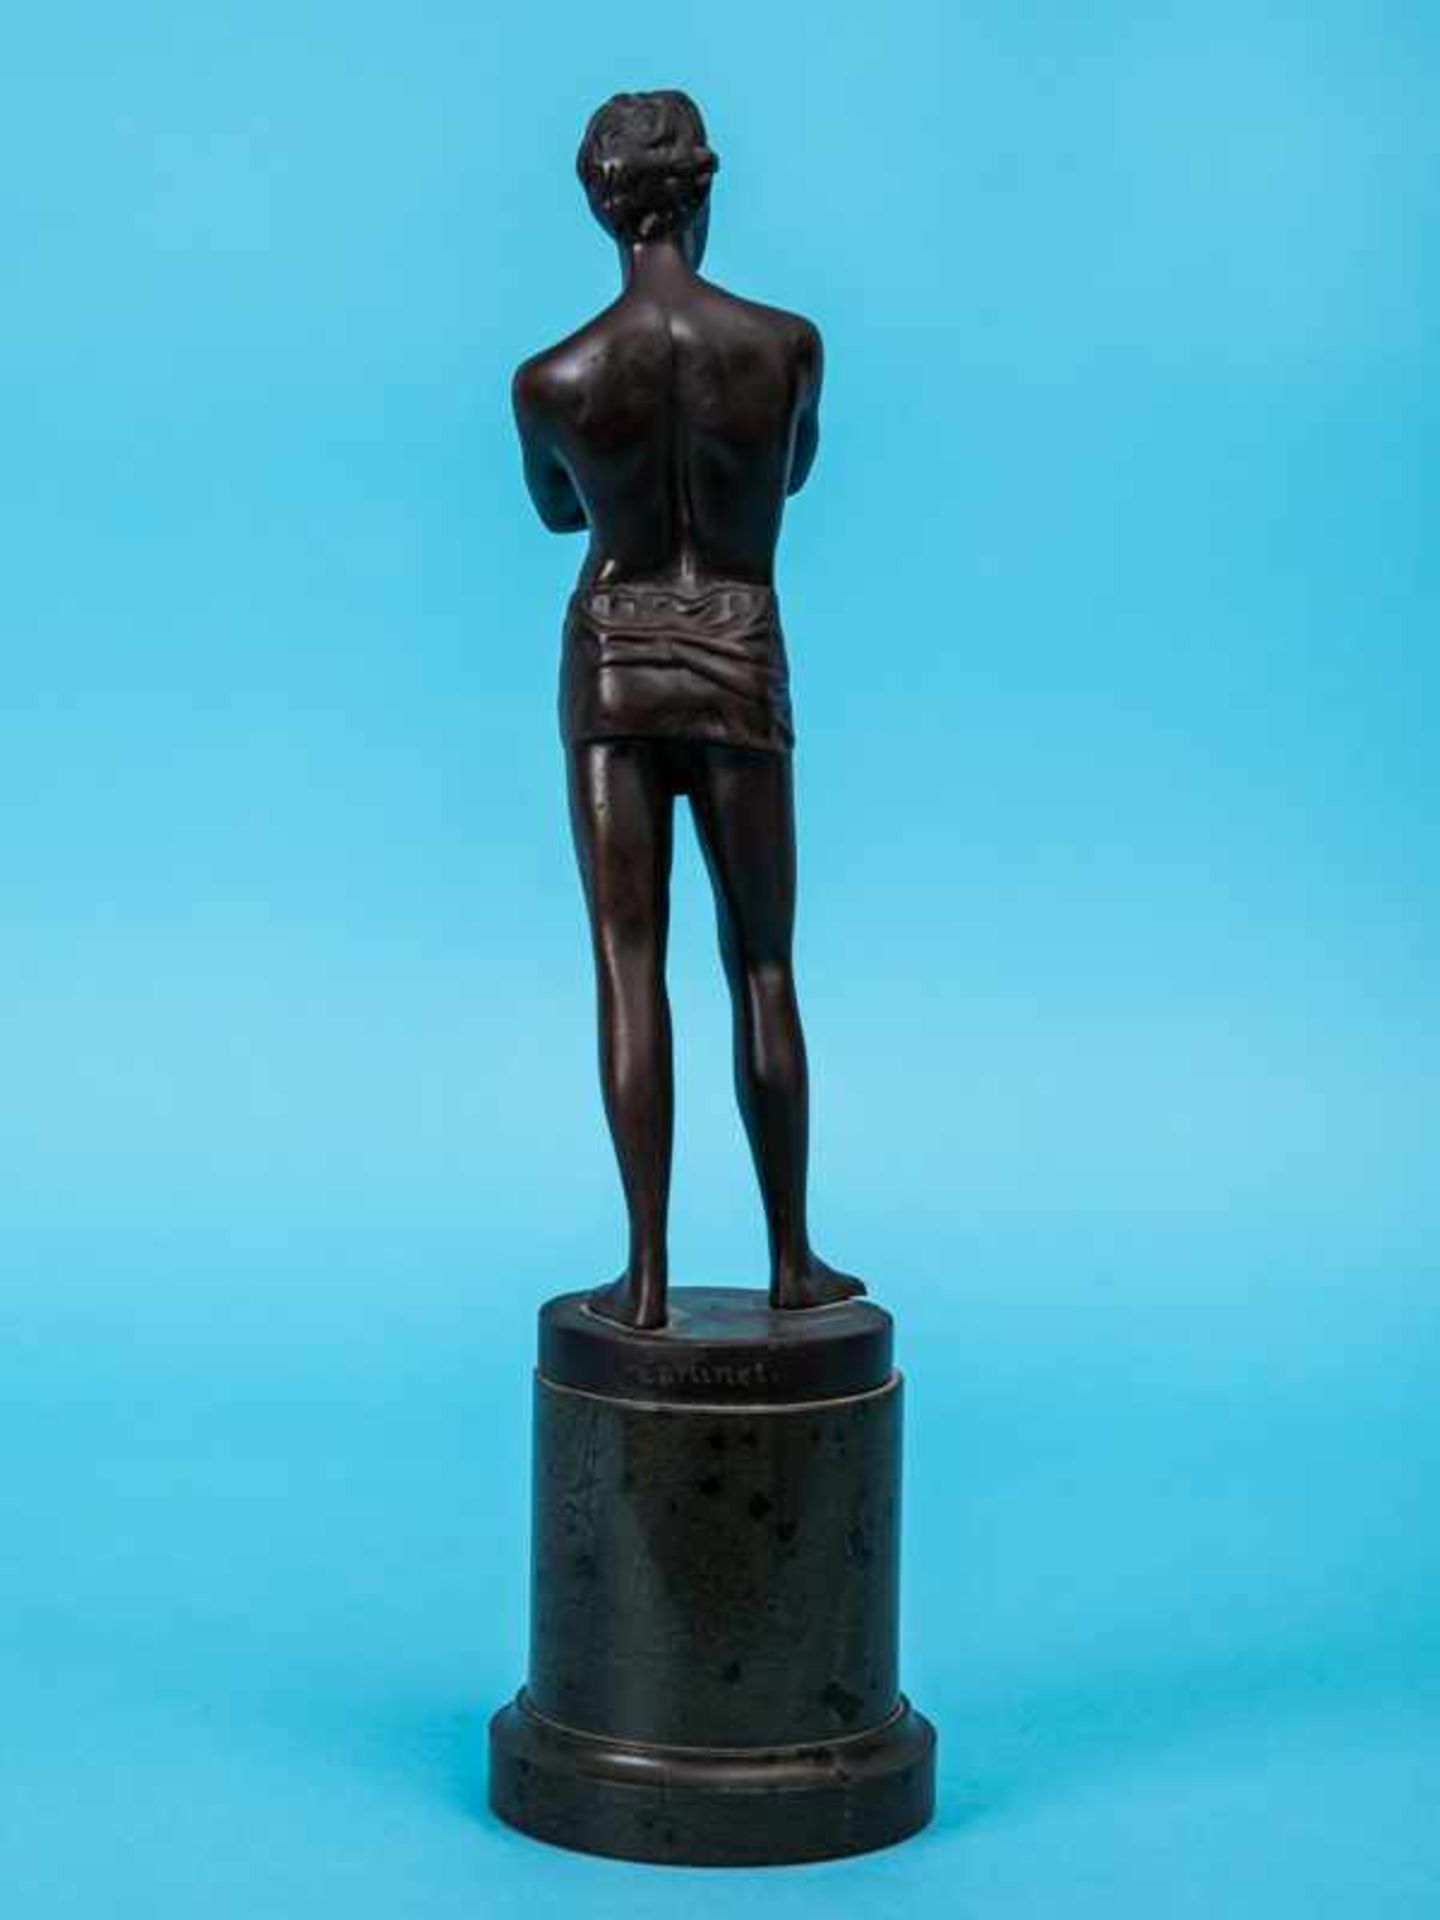 Figurenplastik "Junger Athlet mit Lendenschurz", bezeichnet "Cartinet", Frankreich 1. Hälfte 20. Jh. - Bild 3 aus 6